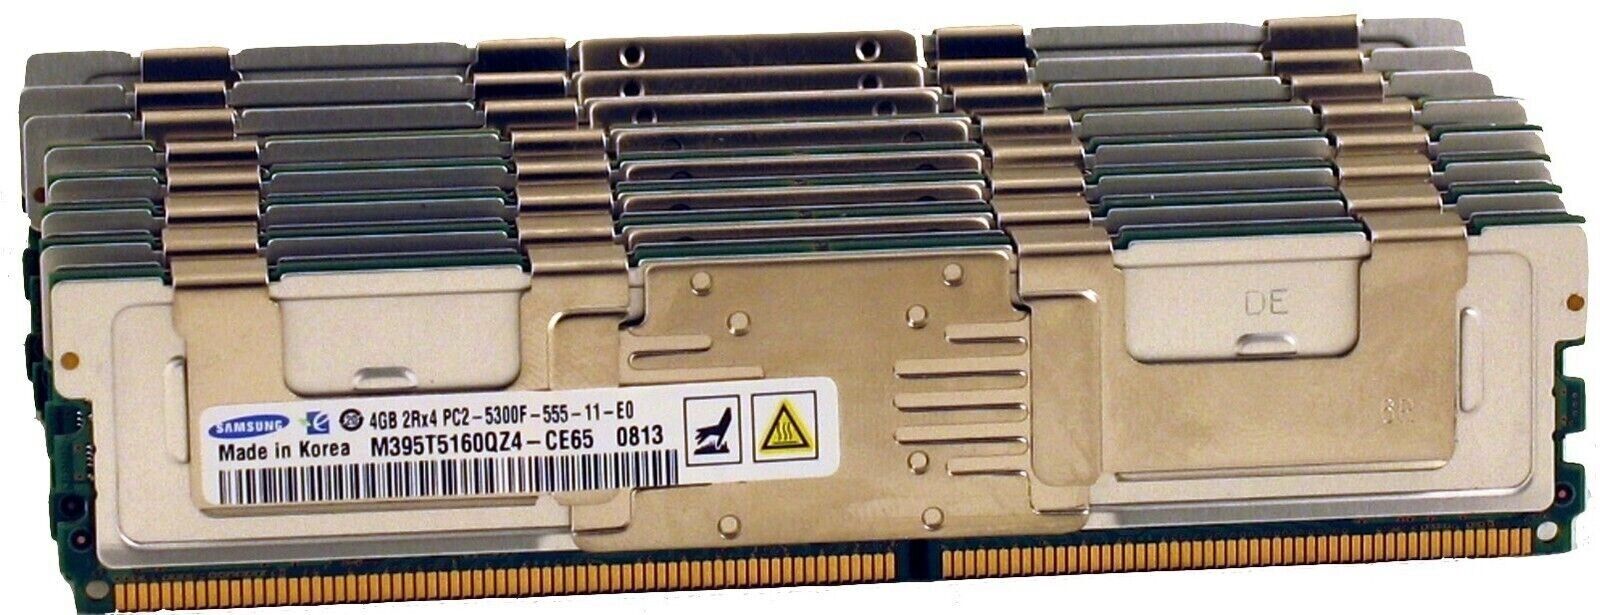 32GB (8 x 4GB) FBD Kit For Dell PowerEdge 2900, 2950, 1900, 1950, 1955, R900